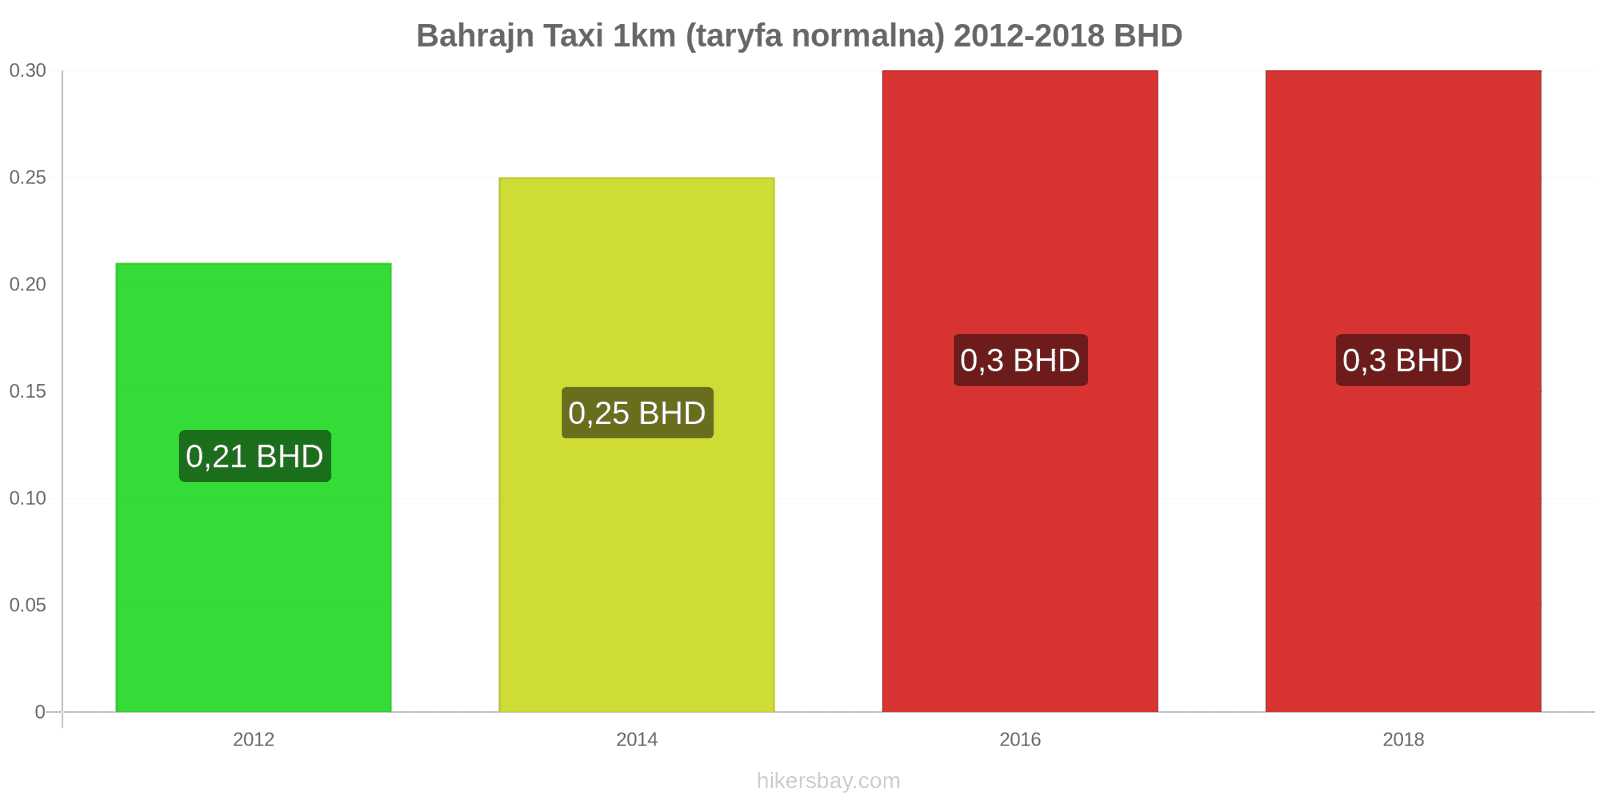 Bahrajn zmiany cen Taxi 1km (taryfa normalna) hikersbay.com